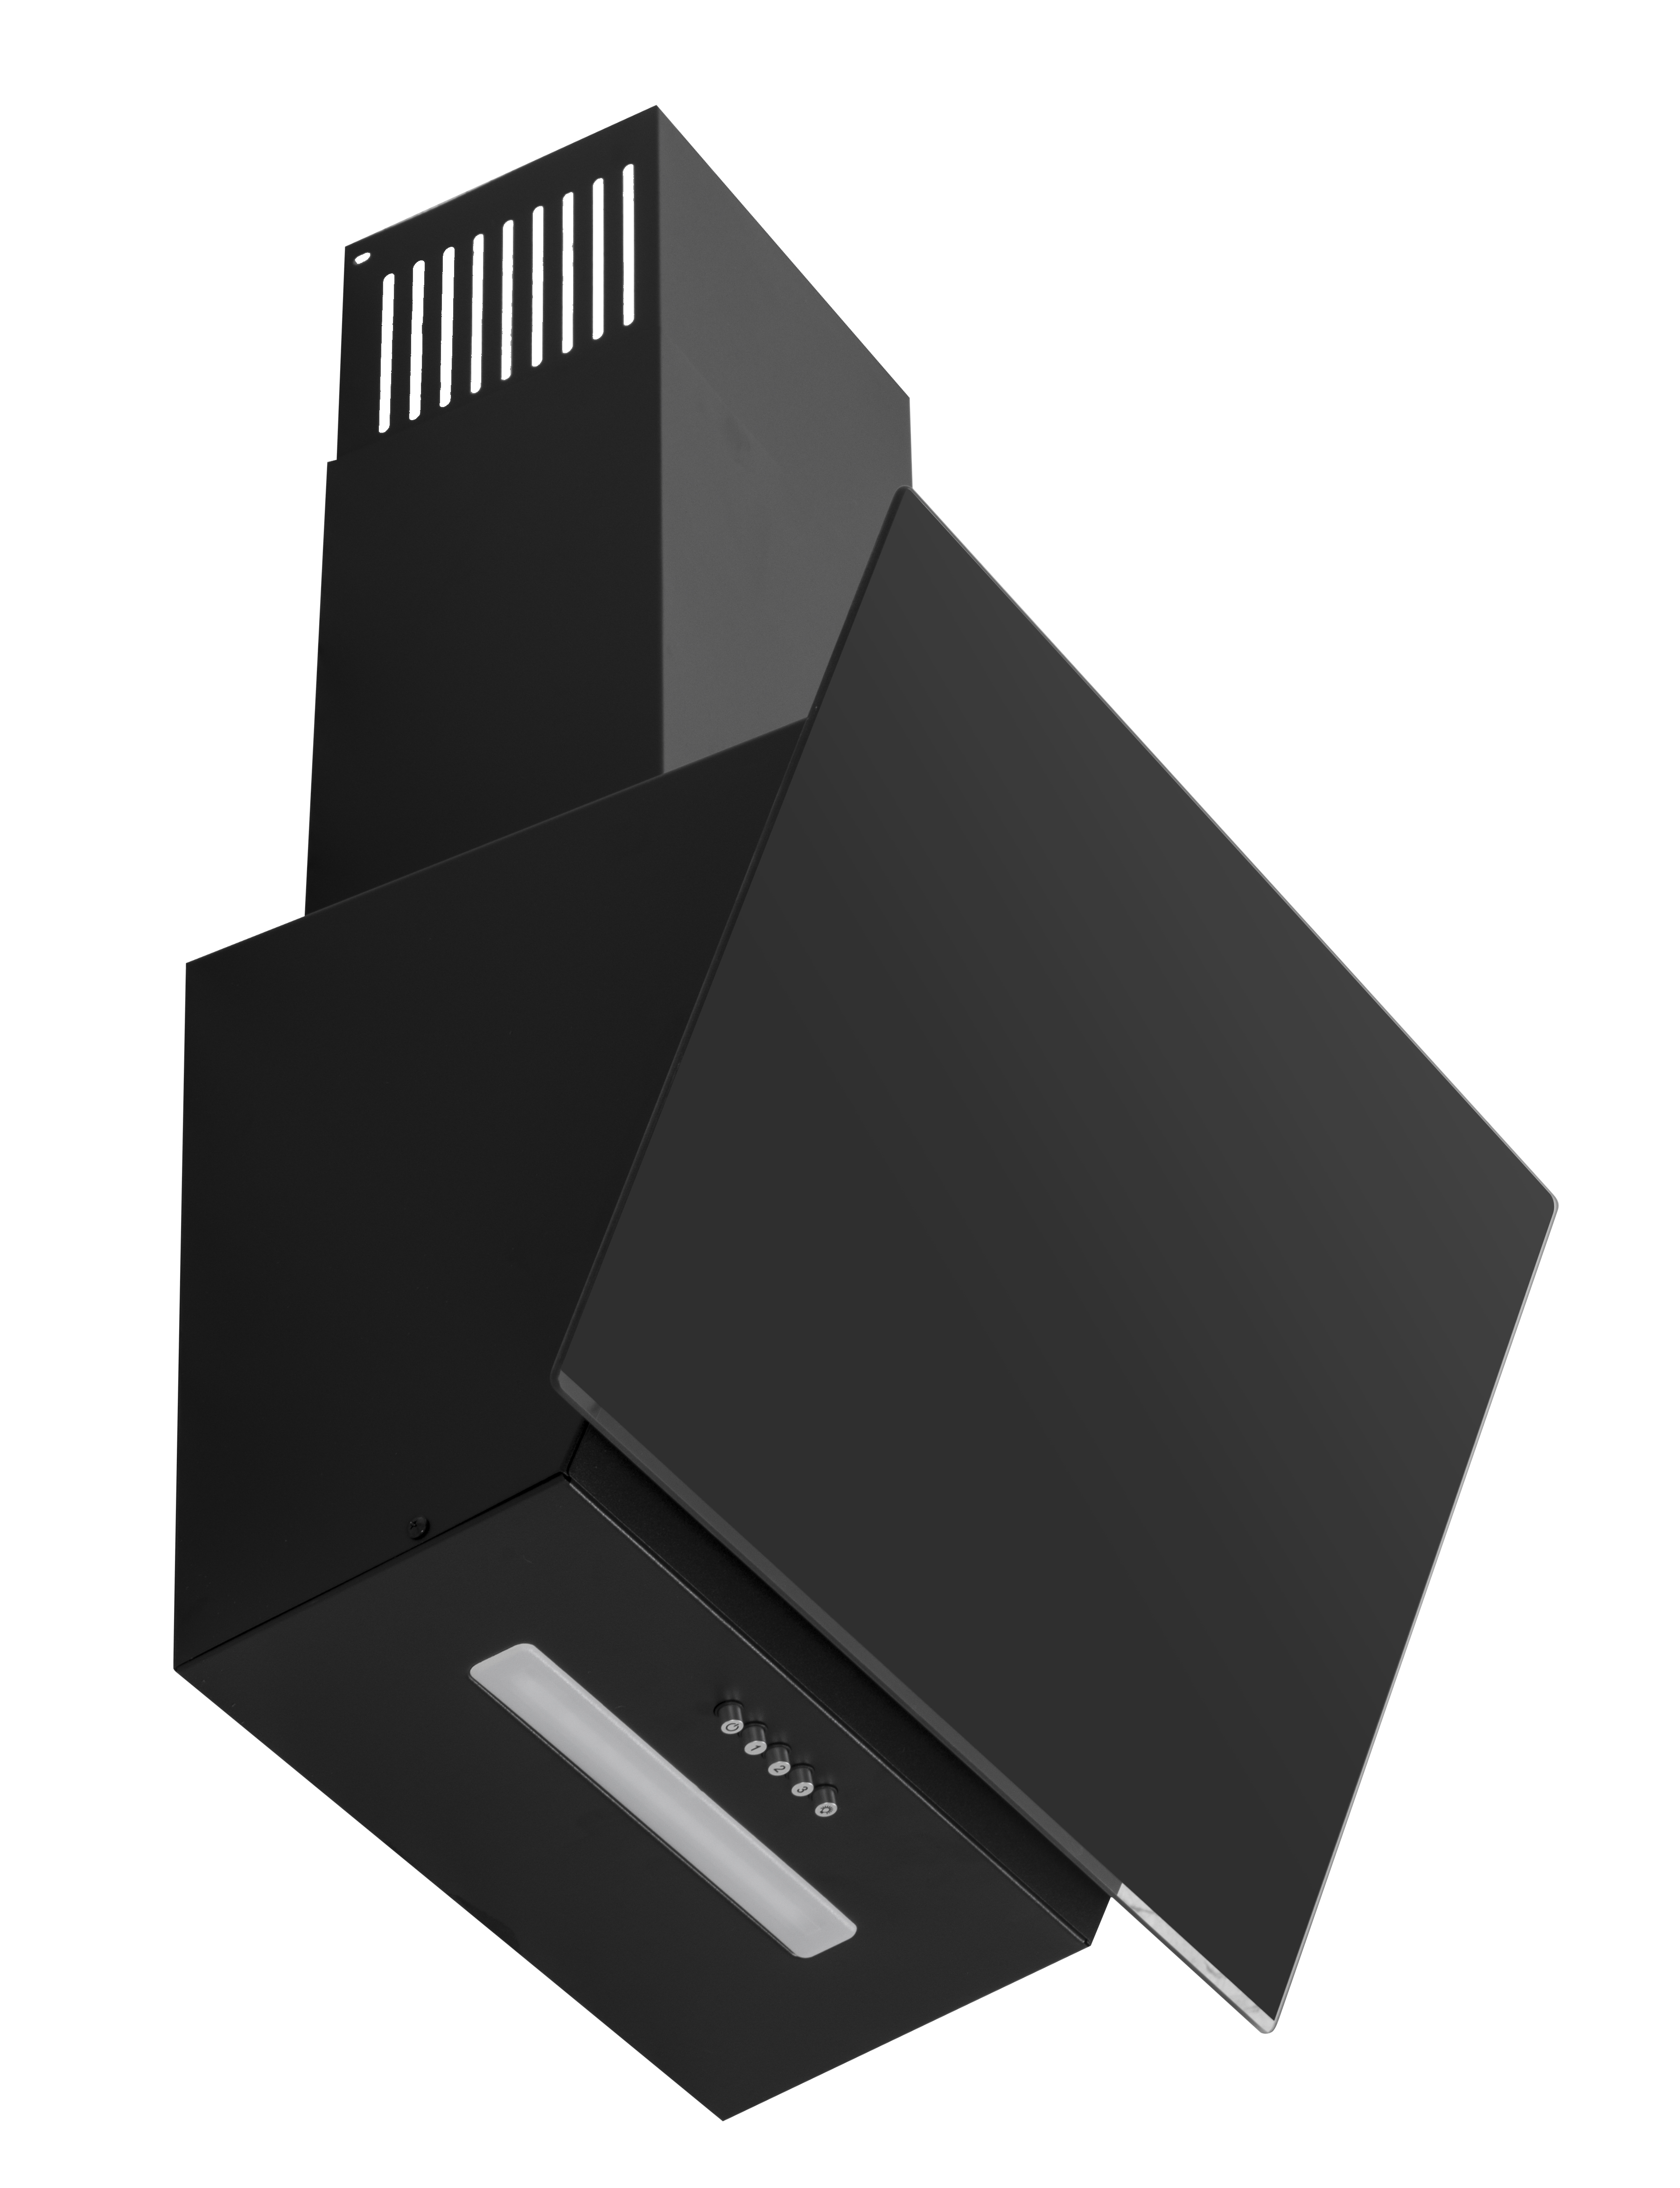 Настенная вытяжка Simfer 8655SM (ширина 60 см, цвет черный)